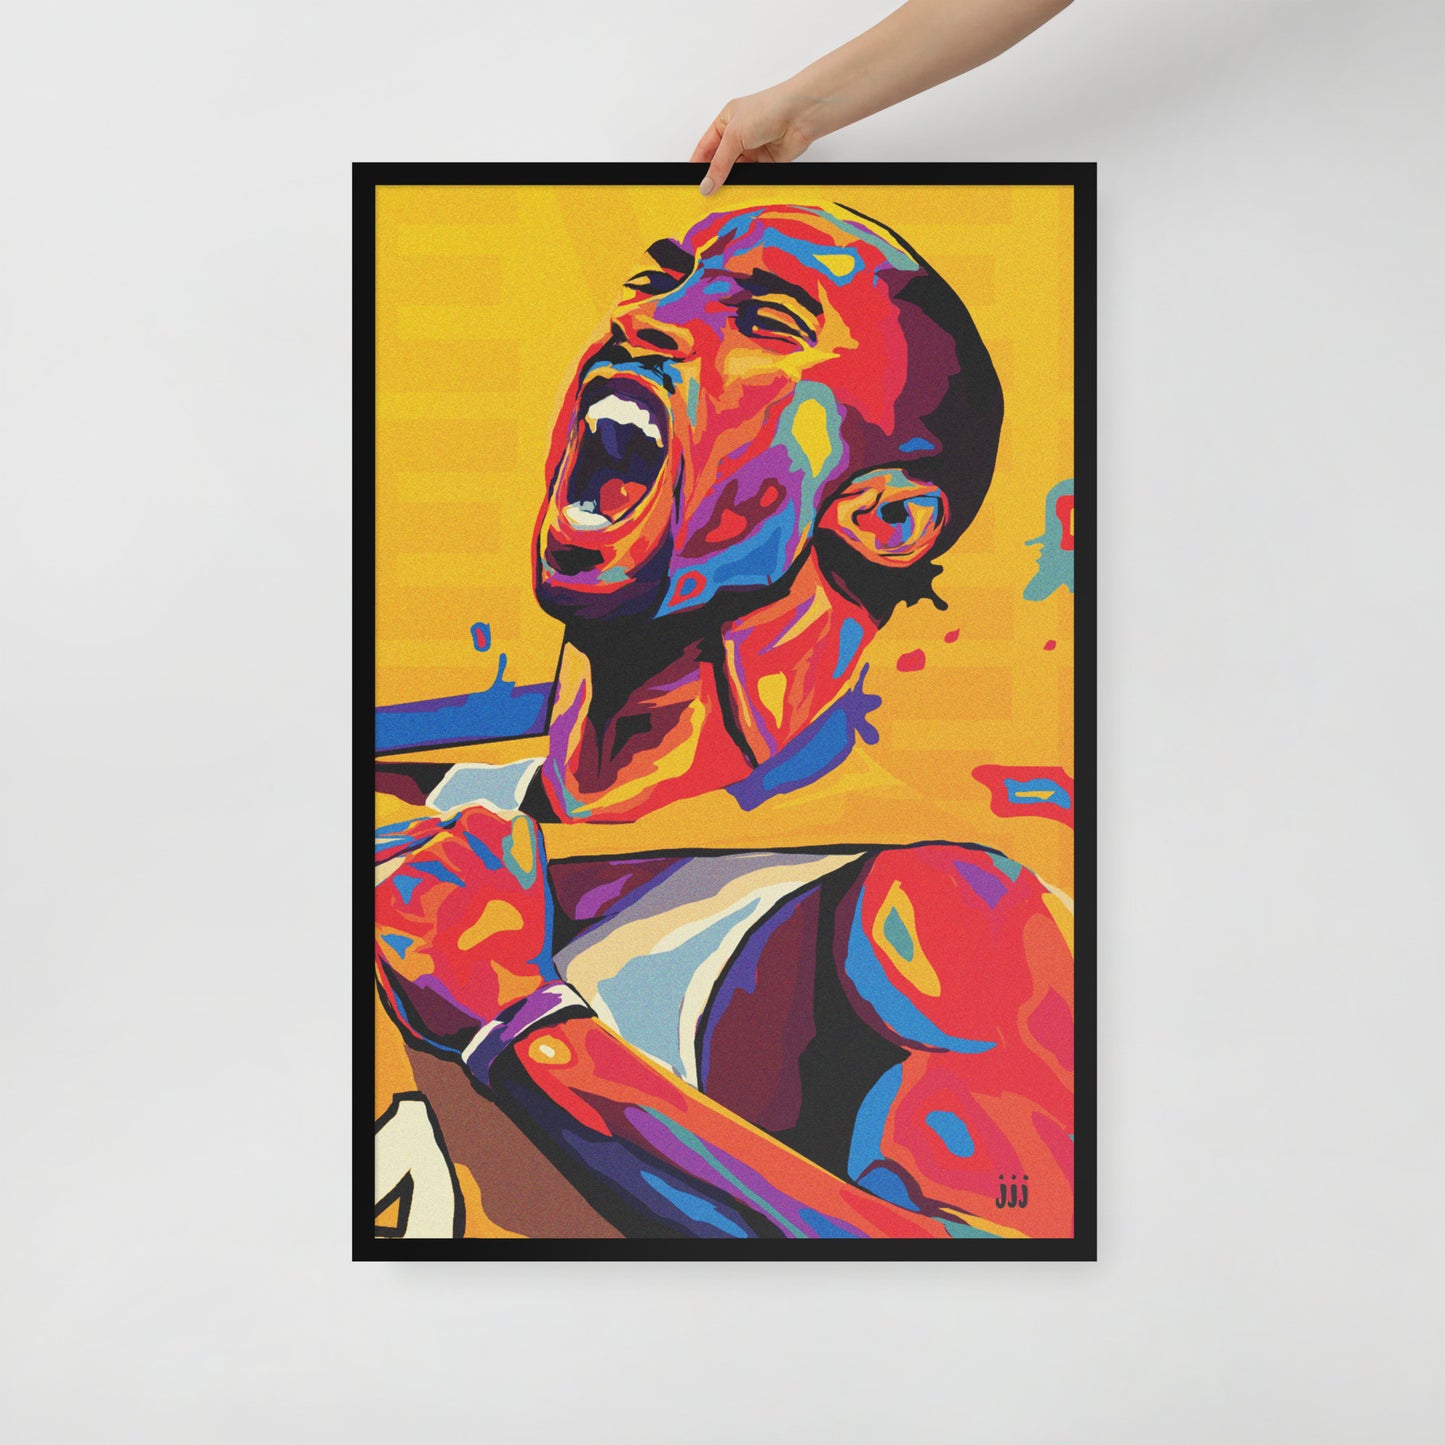  "Fine art framed print on matte paper of digital Kobe Bryant illustration | Emerging contemporary artist Kate Jensen  | Katejjj.shop"